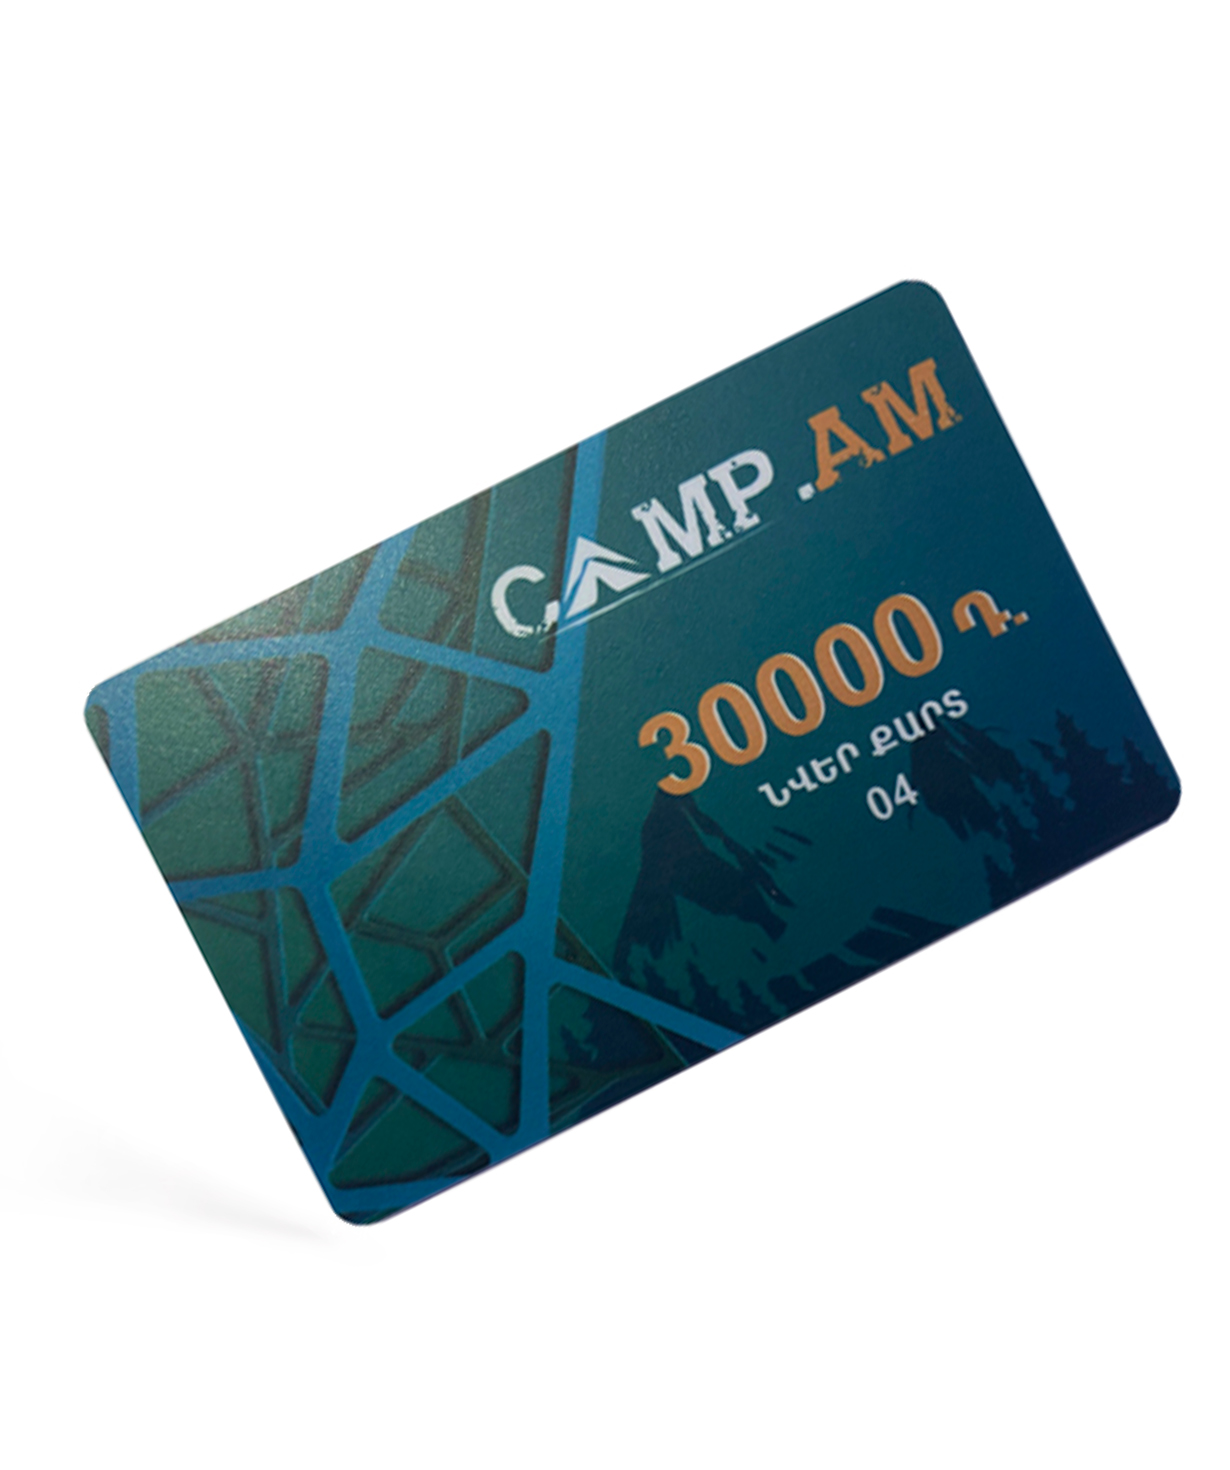 Նվեր-քարտ «Camp.am» 30,000